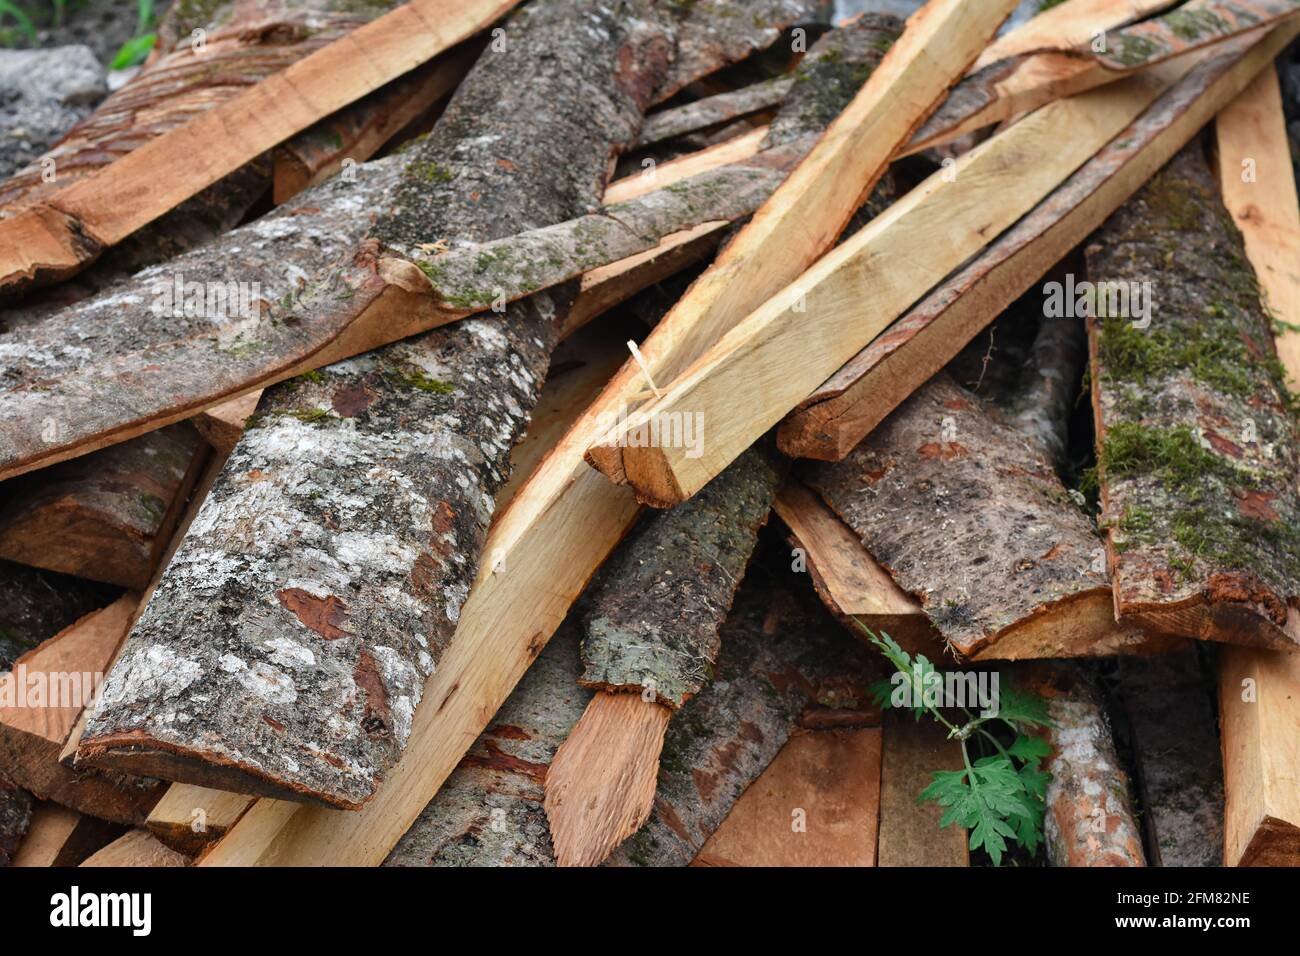 Tronchi d'albero con motivo rosso brunastro in fibra di legno chiaramente visibile Foto Stock